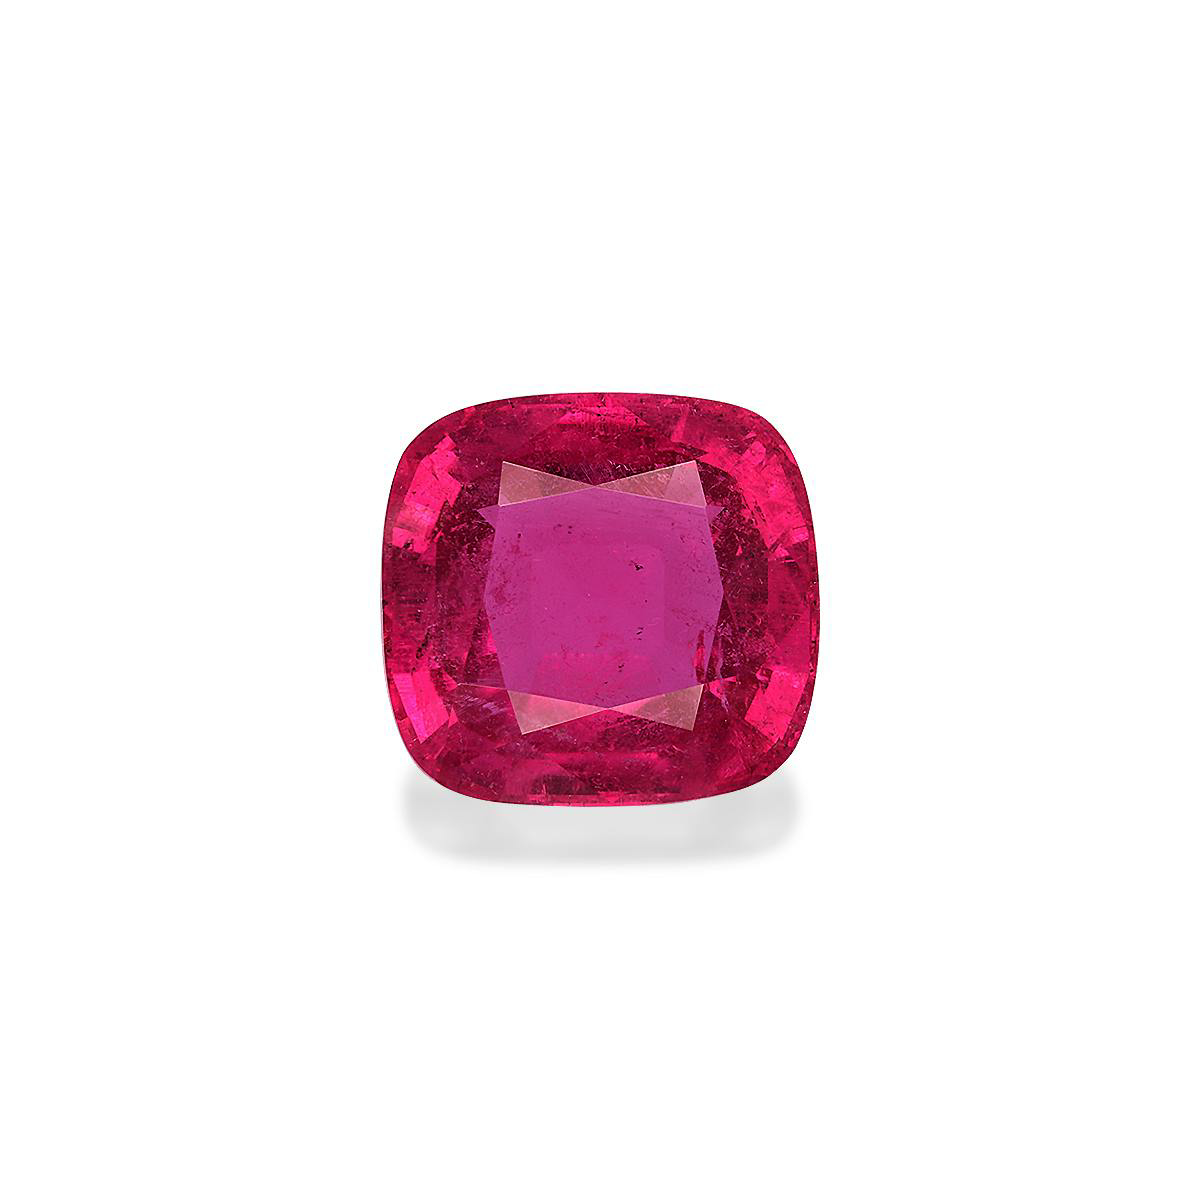 Vivid Pink Rubellite Tourmaline 18.07ct (RL1193)